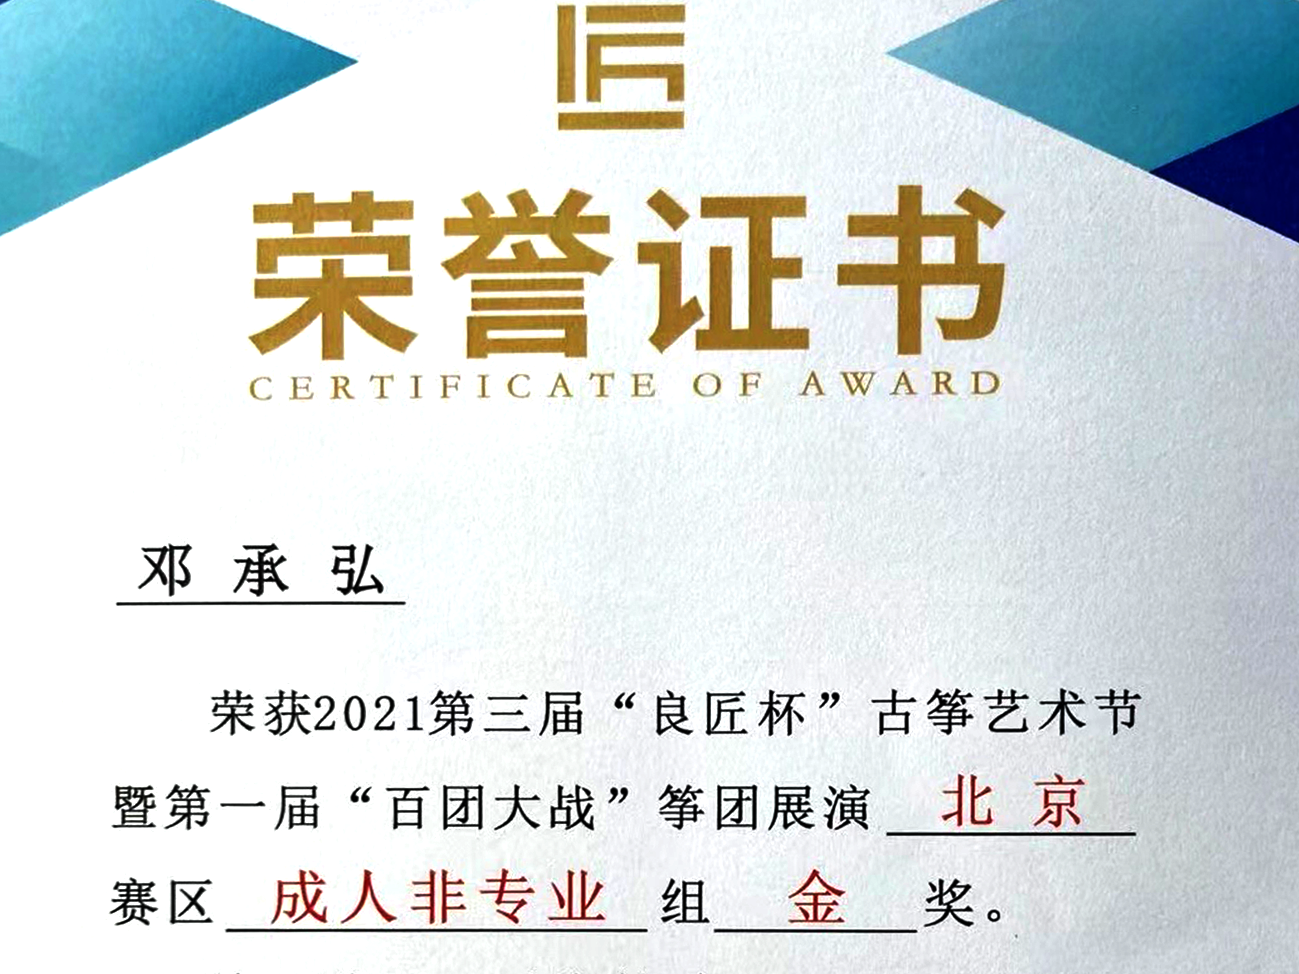 恭喜梦词学员邓承弘荣获2021第三届“良匠